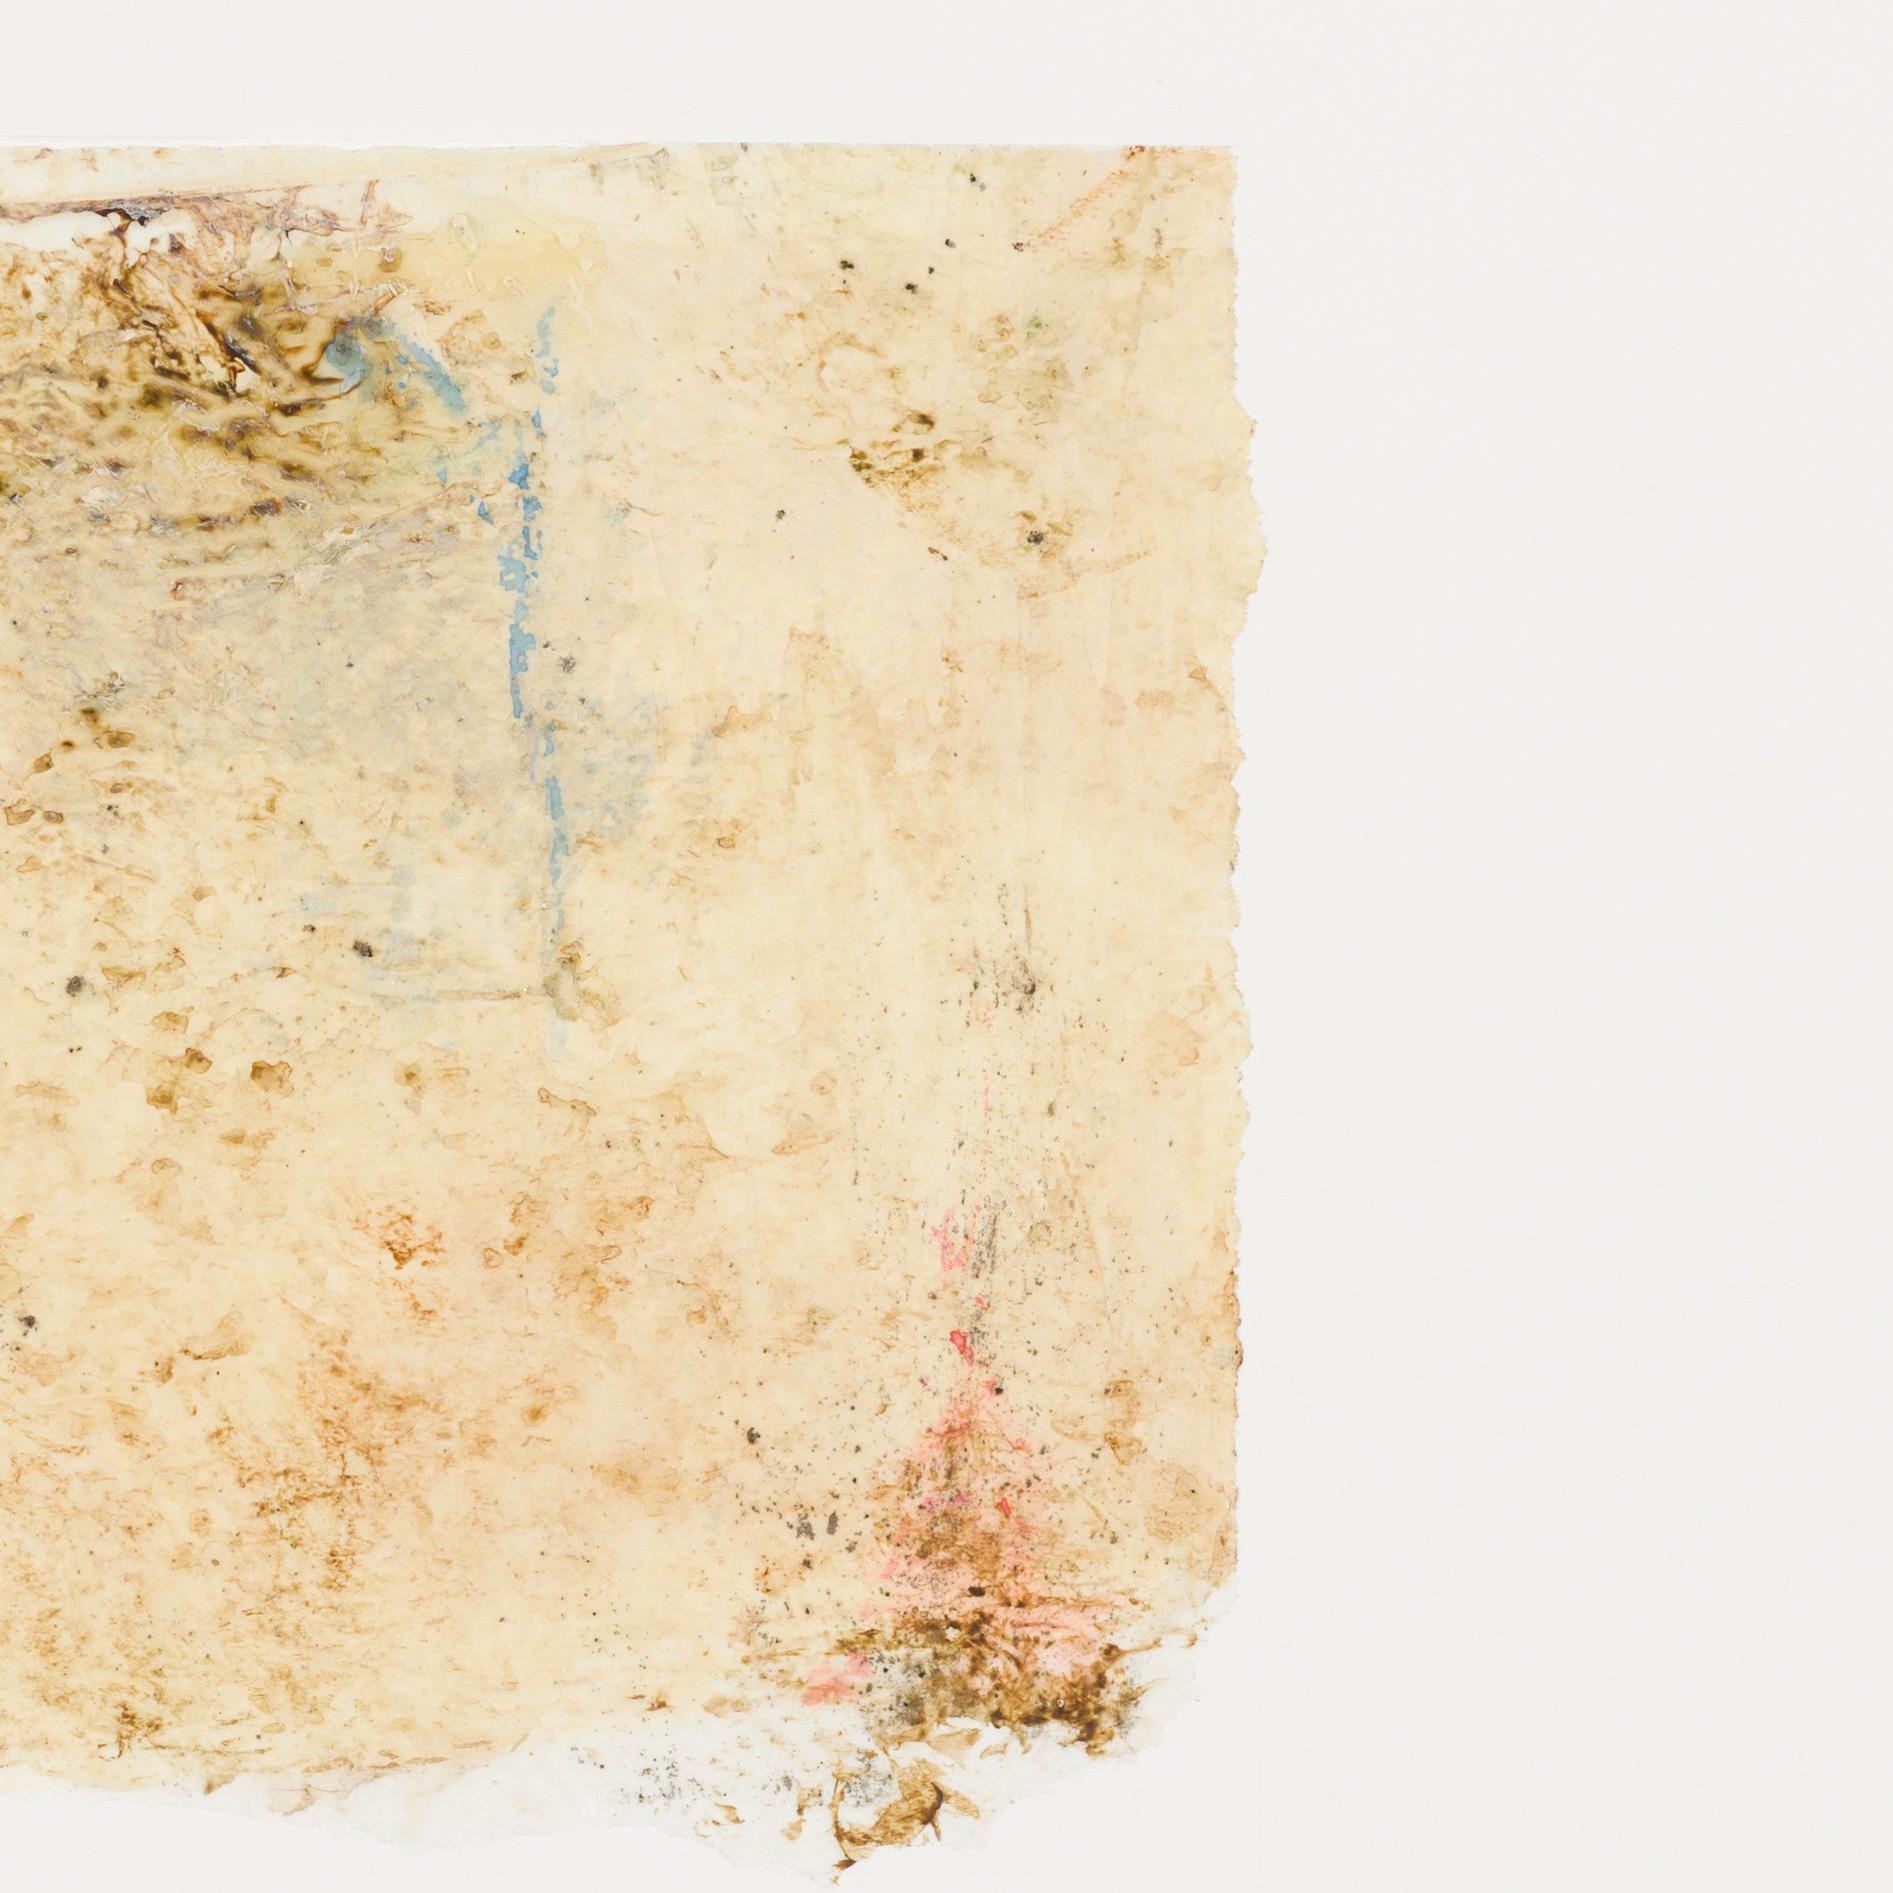 techniques mixtes sur papier ; non encadré 

feuille entière 22 x 30 pouces 

signé en en bas à droite

Le peintre néoromantique Hiro Yokose fusionne de multiples couches de cire et de peinture à l'huile pour créer des paysages mystérieux et voilés,